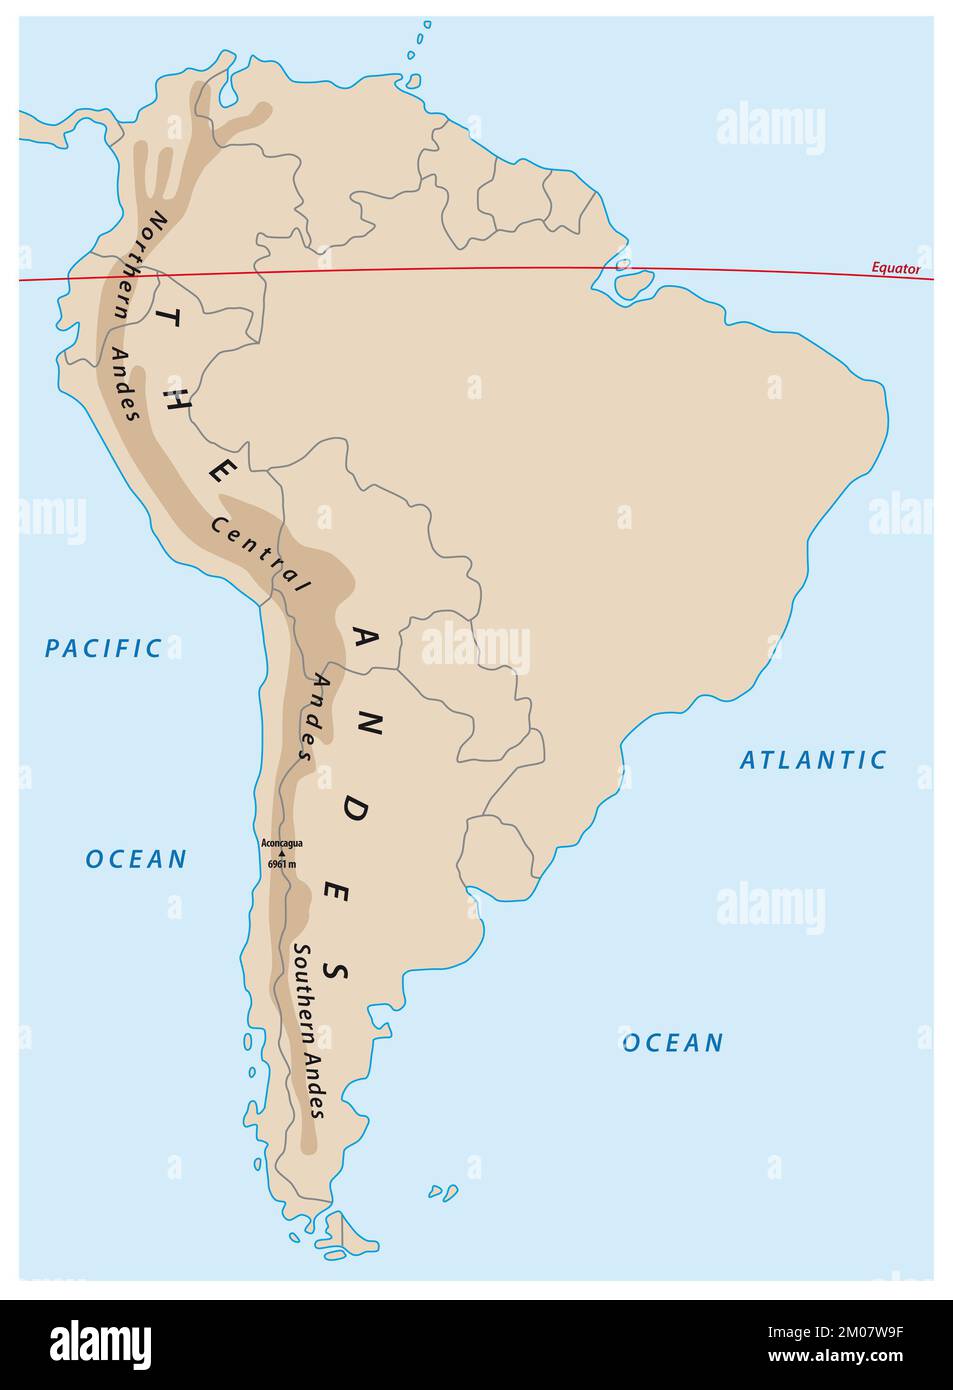 mapa sencillo de las montañas de los andes sudamericanos Foto de stock